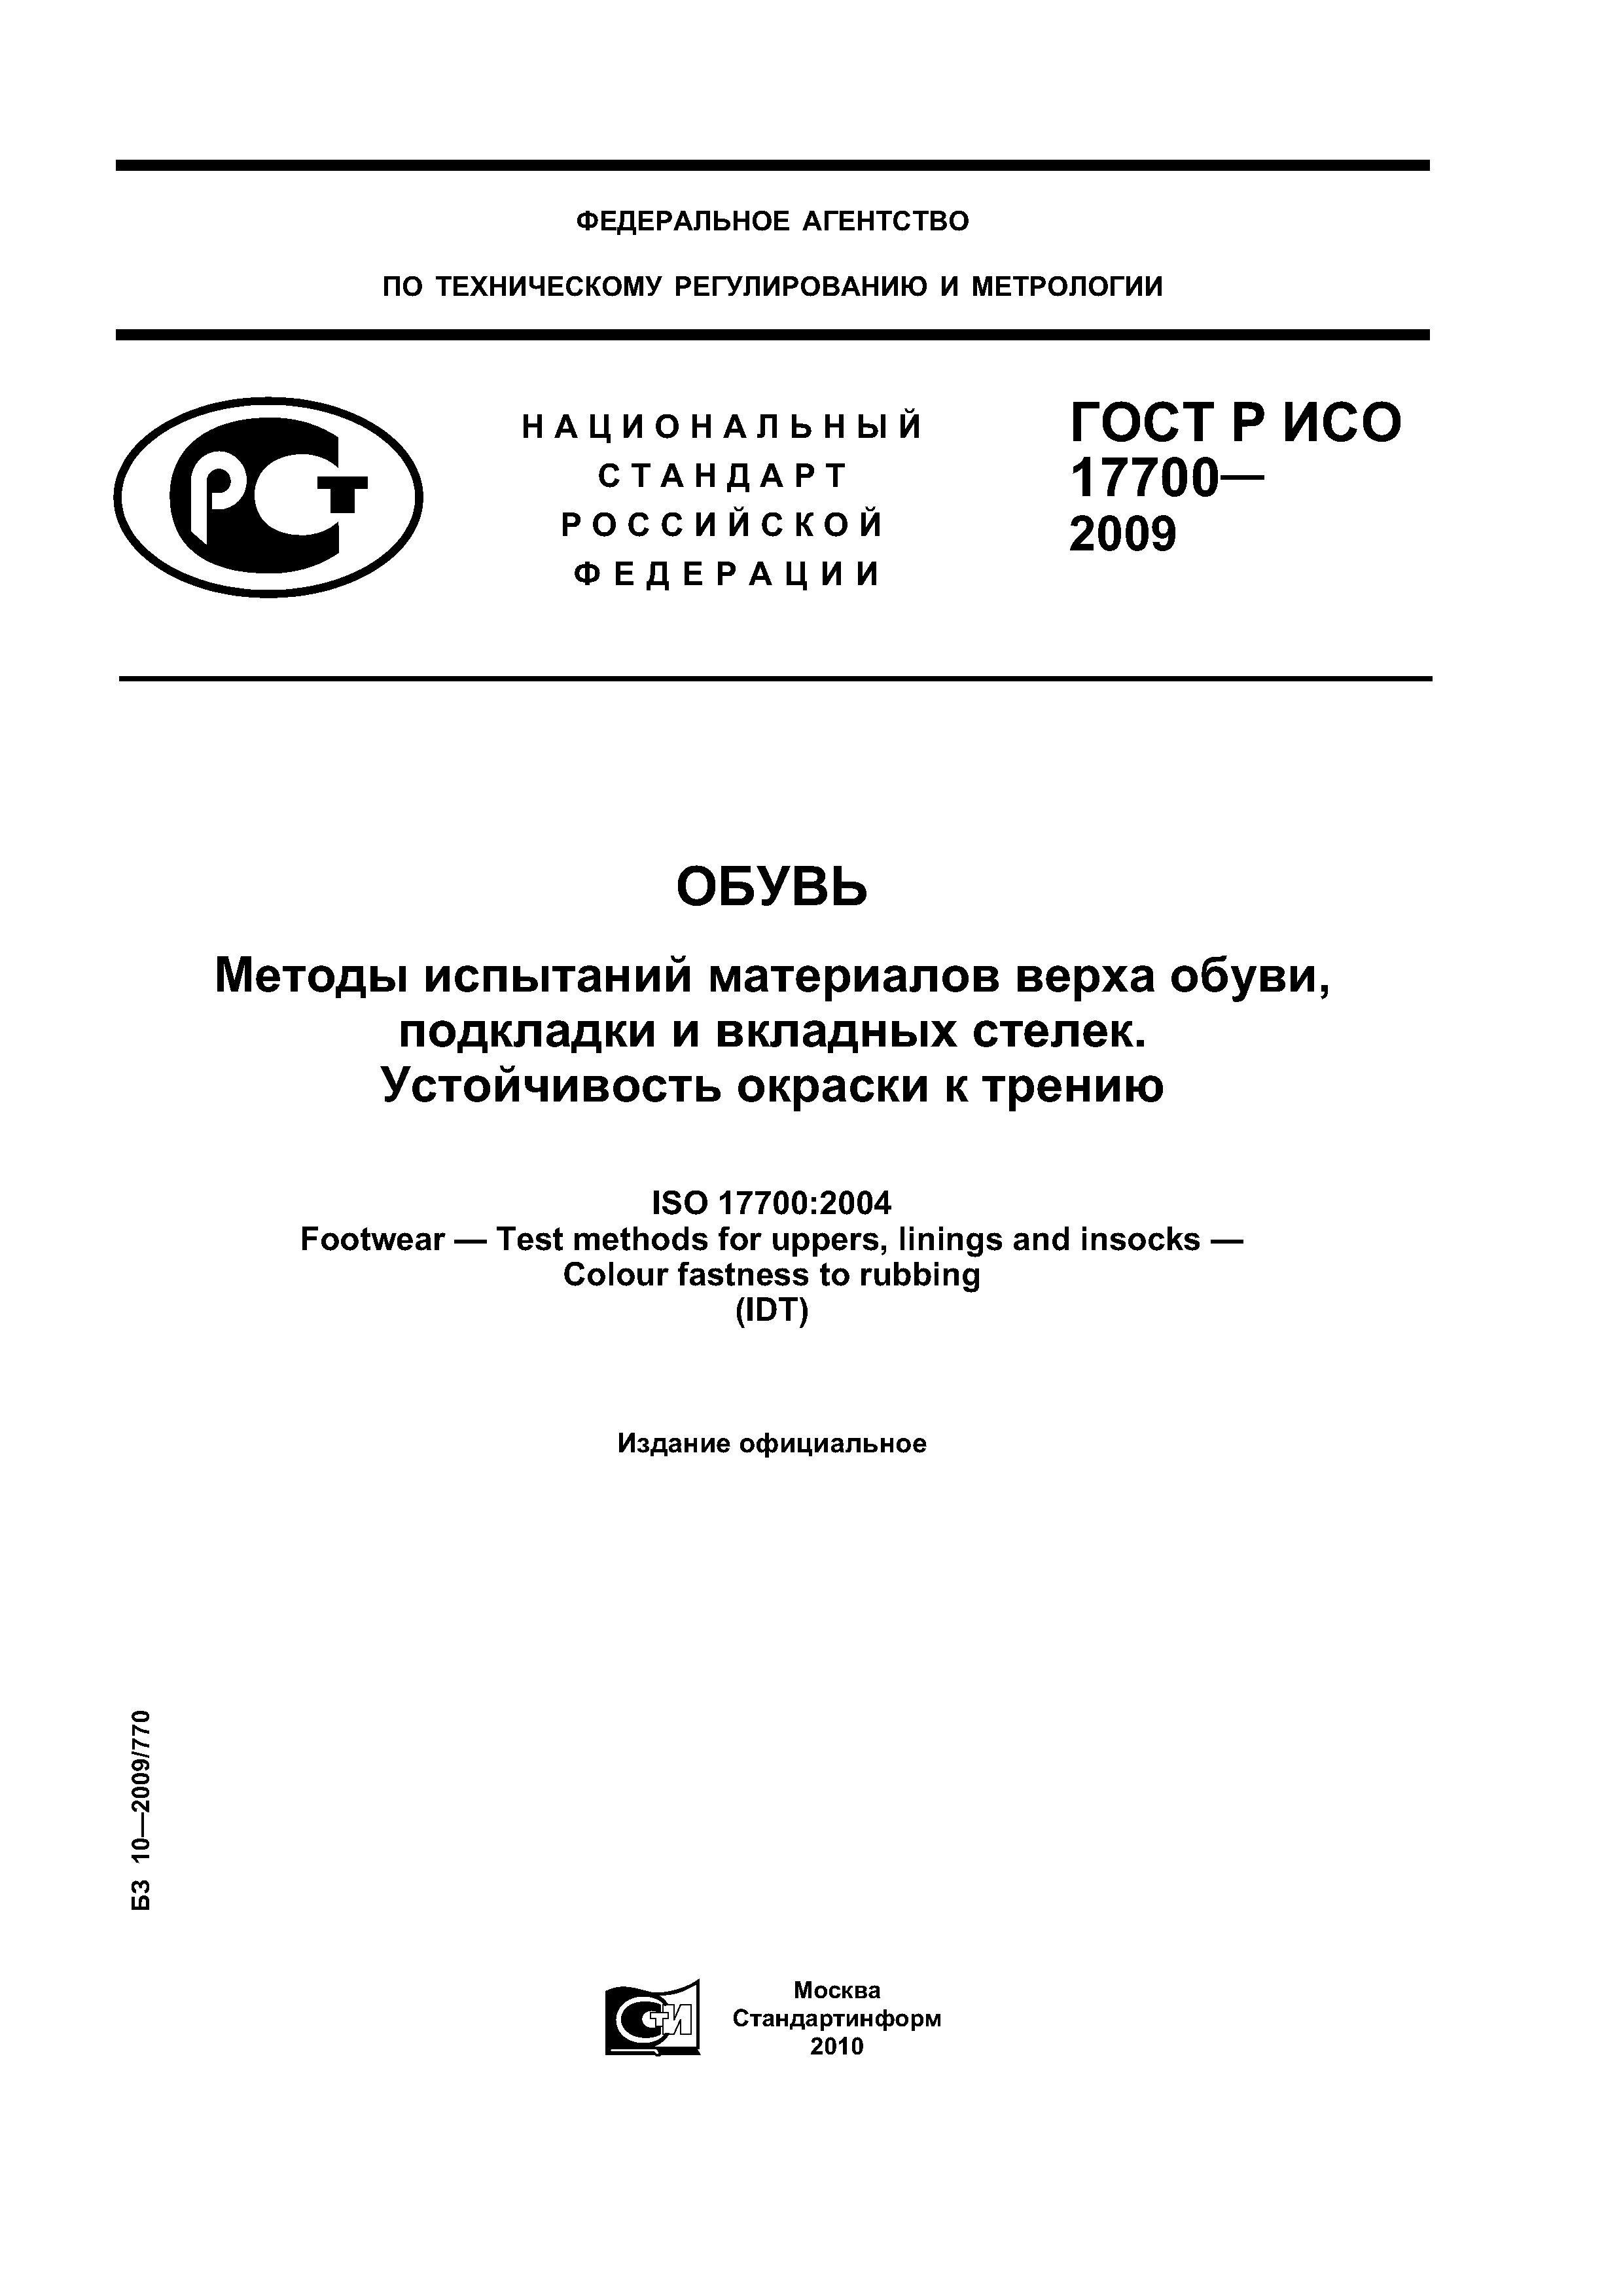 ГОСТ Р ИСО 17700-2009